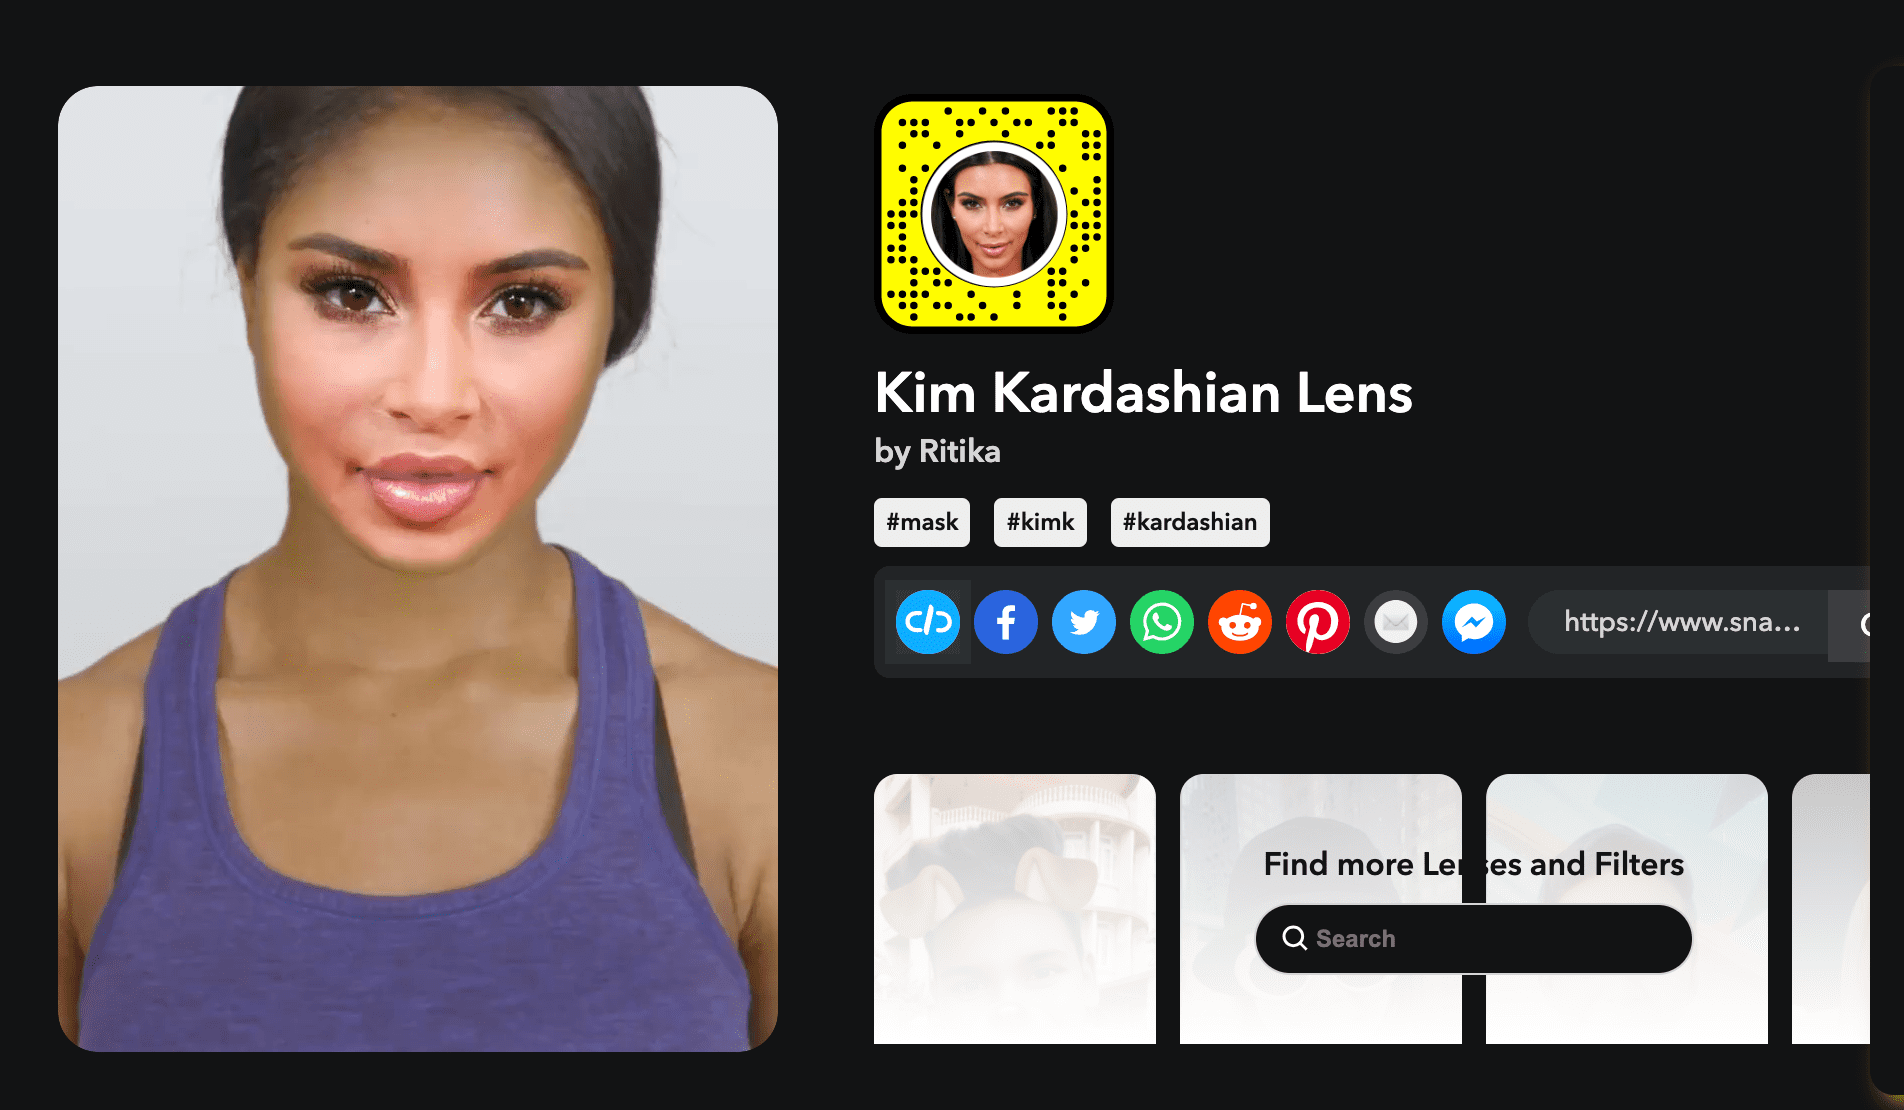 Kim Kardashian Lens by ritika